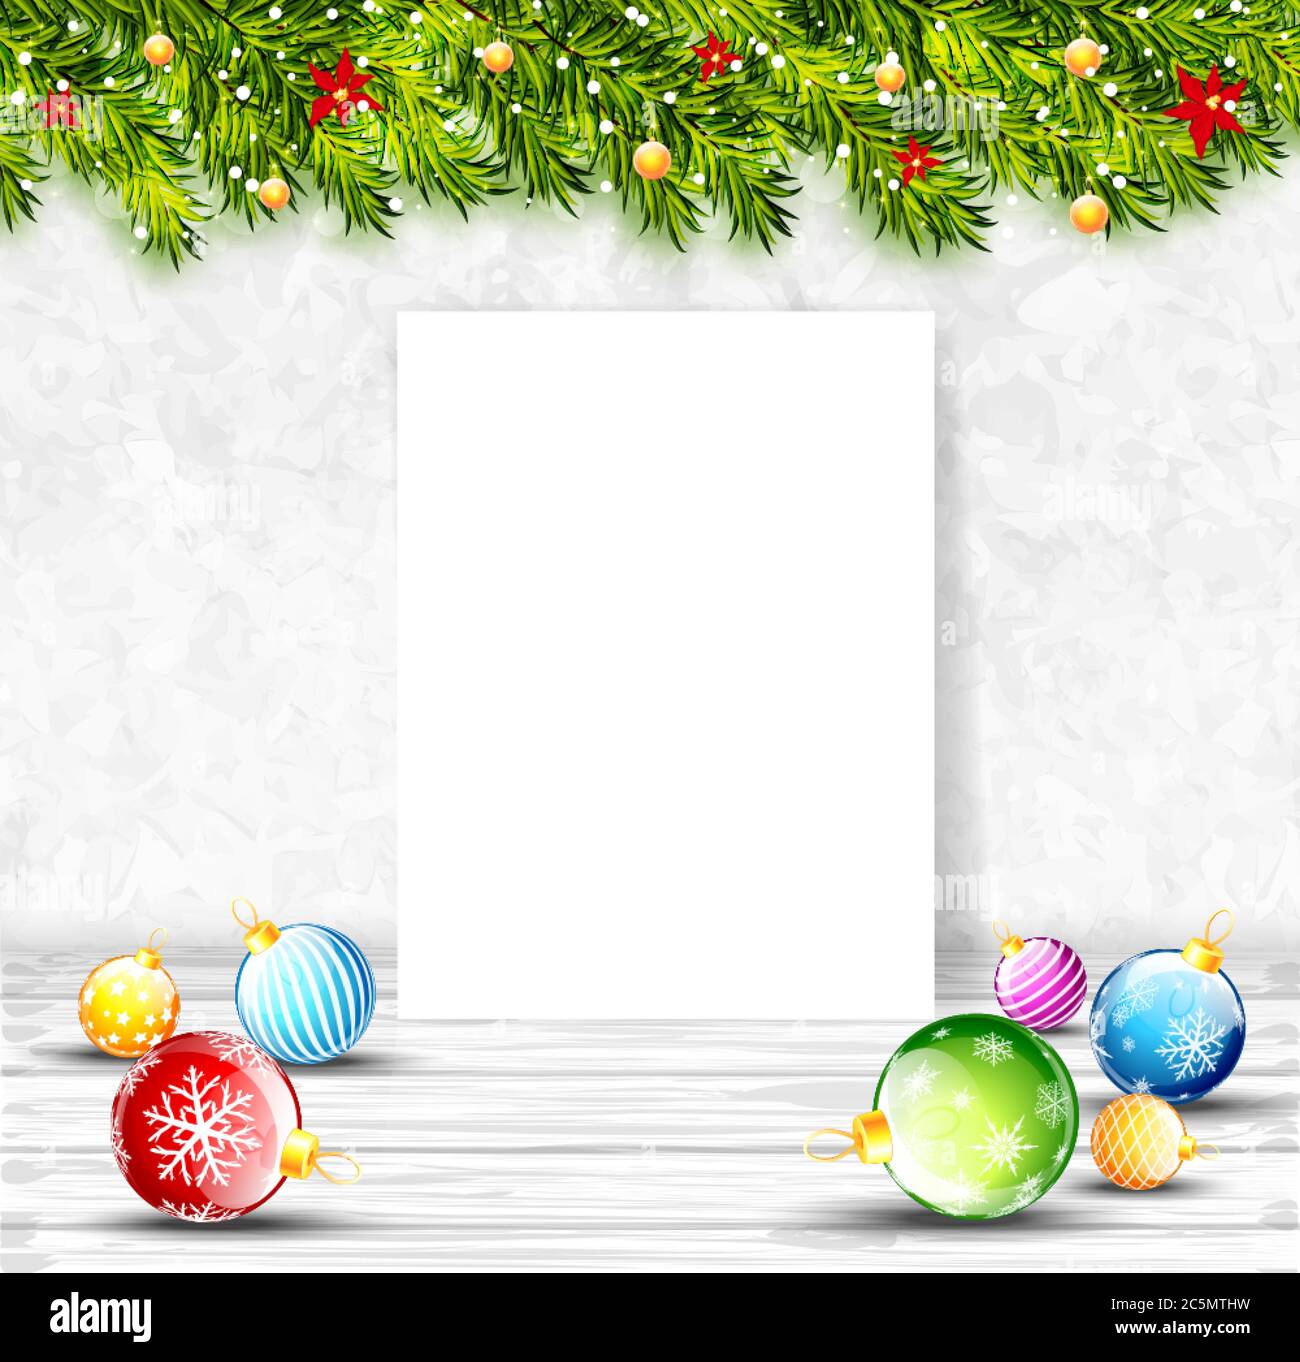 Weihnachtliche Hintergrund mit weißem leerem Papier und weihnachtsschmuck. Vektorgrafik Stock Vektor